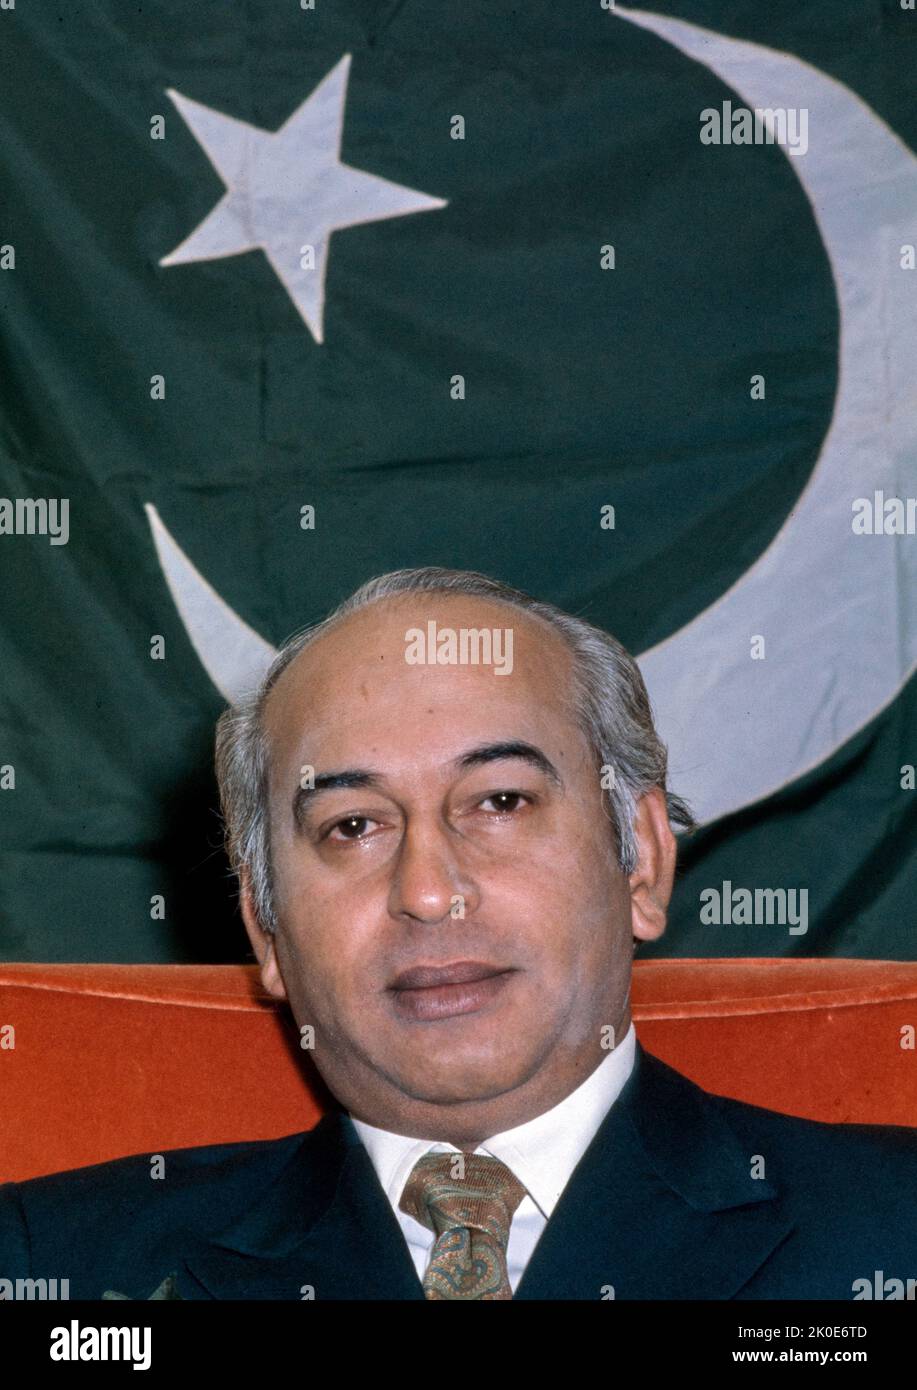 Shaheed Zulfiqar Ali Bhutto (1928 - 1979), avocat et homme politique pakistanais qui a servi comme premier ministre du Pakistan de 1973 à 1977, et avant cela comme quatrième président du Pakistan de 1971 à 1973. Il a également été le fondateur du Parti du peuple pakistanais (PPP) et en a été le président jusqu'à son exécution en 1979. Banque D'Images